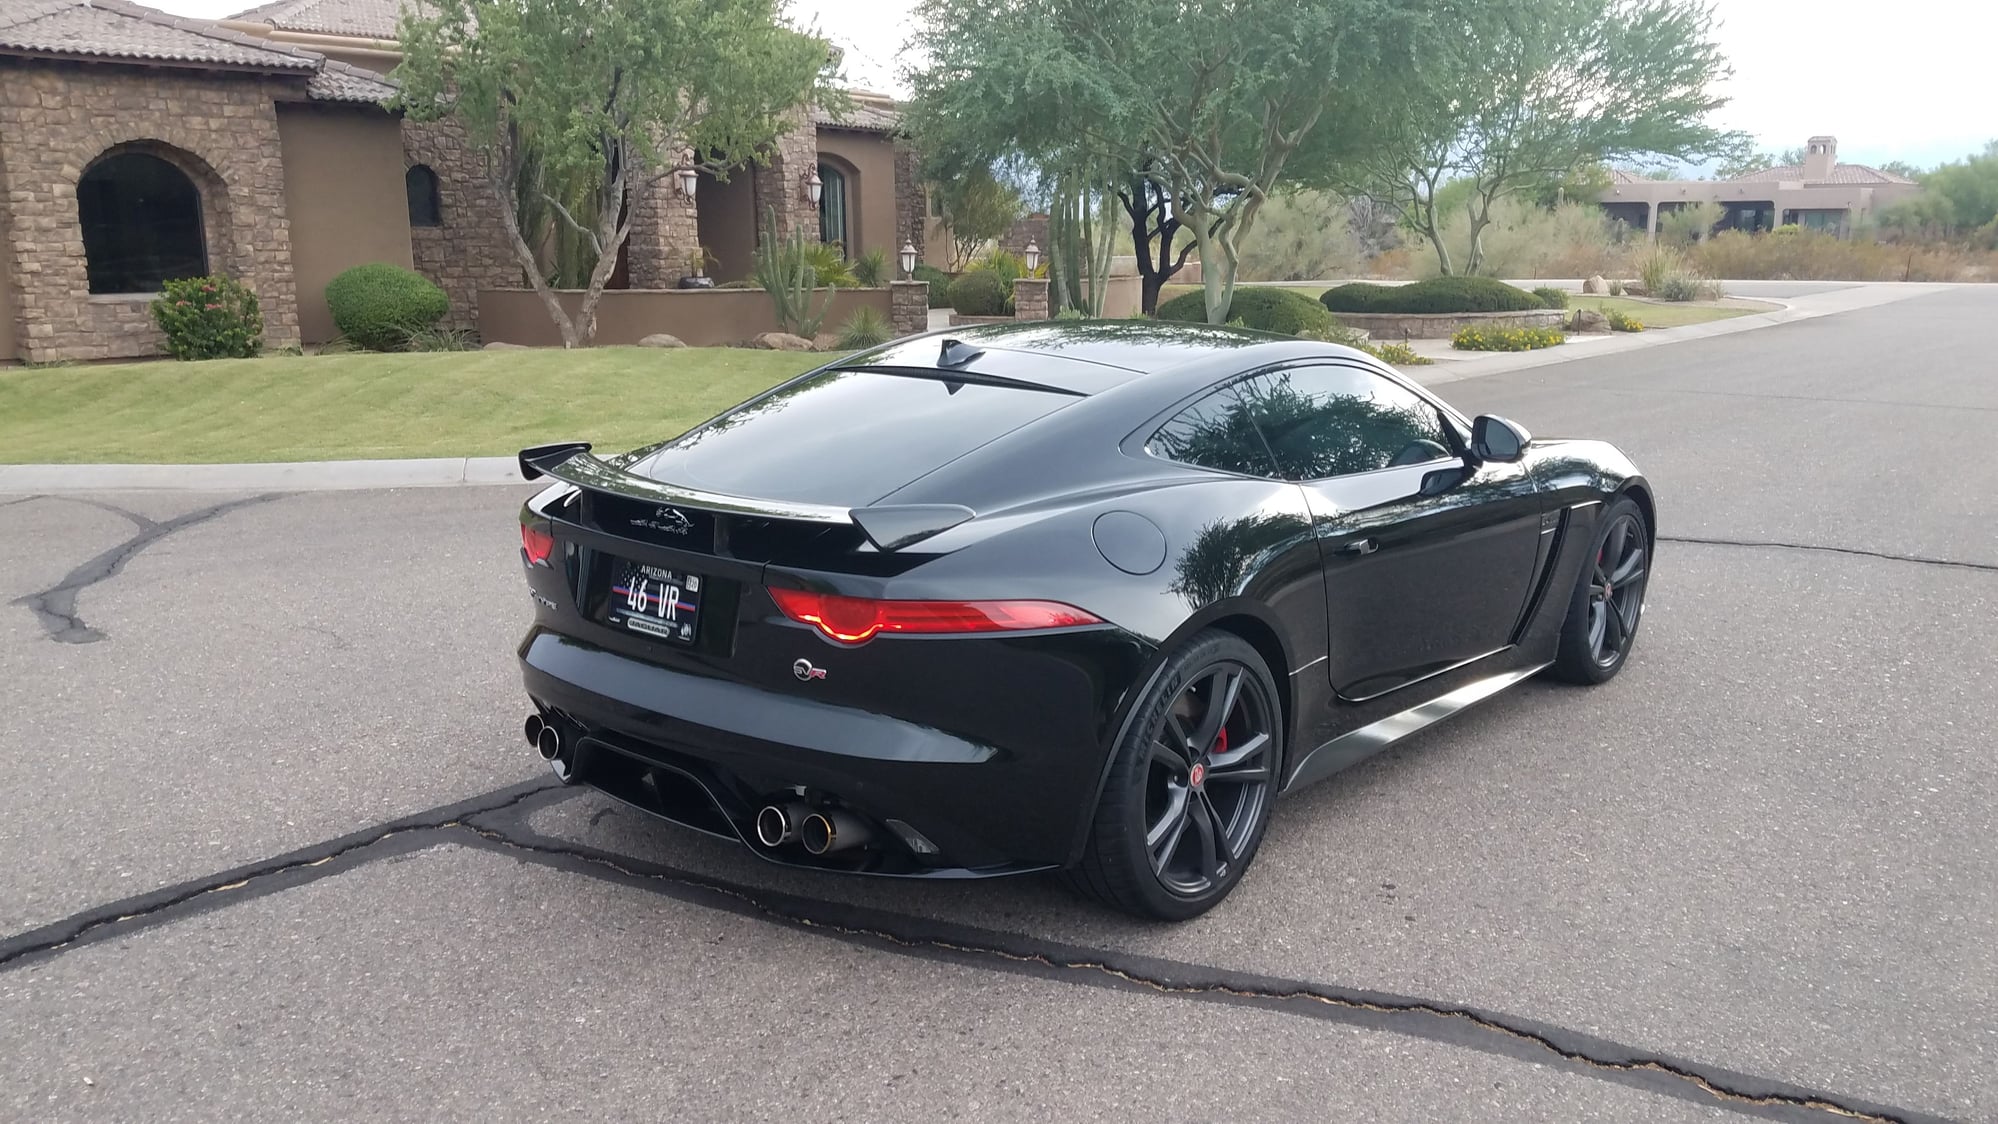 2017 Jaguar F-Type - For Sale 2017 F-Type SVR - Used - VIN SAJWJ6J85HMK44781 - 11,000 Miles - Phoenix, AZ 85048, United States